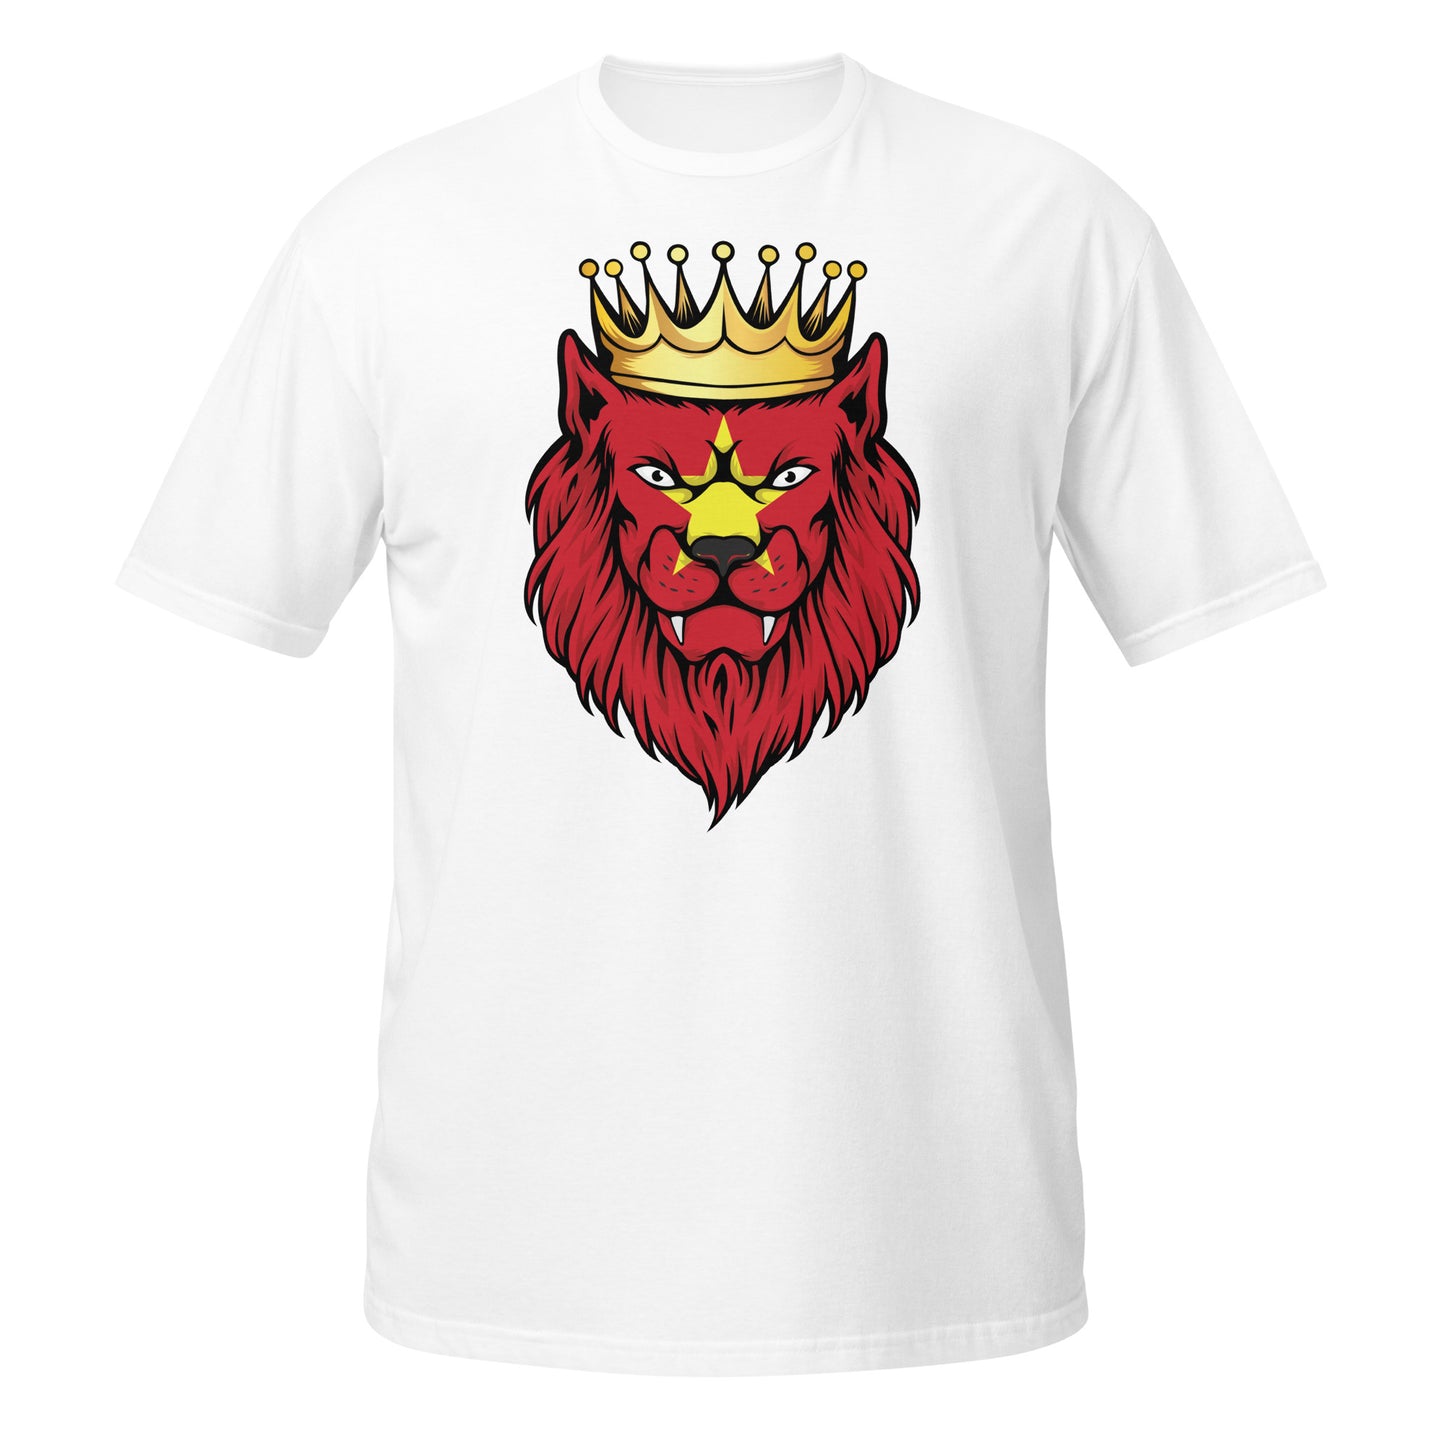 Vietnamese Colored Lion T-shirt